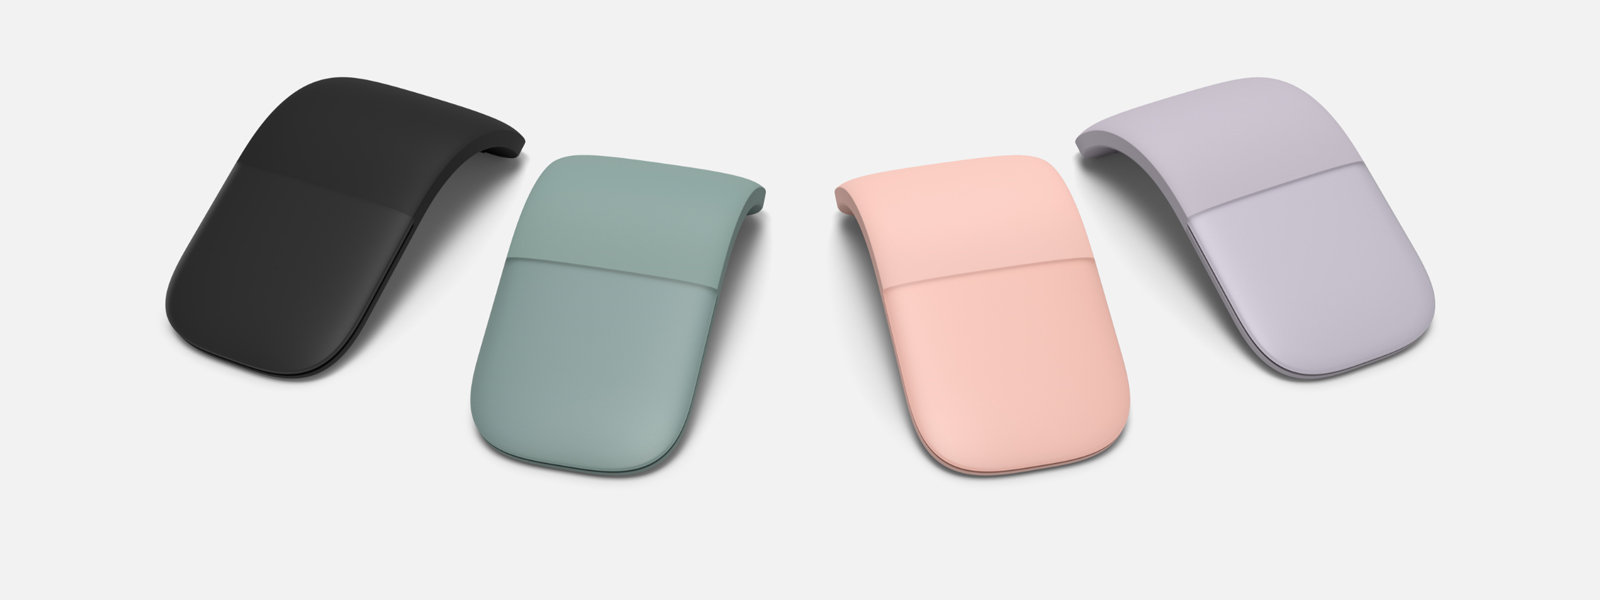 Souris Microsoft Arc Mouse dans différentes couleurs